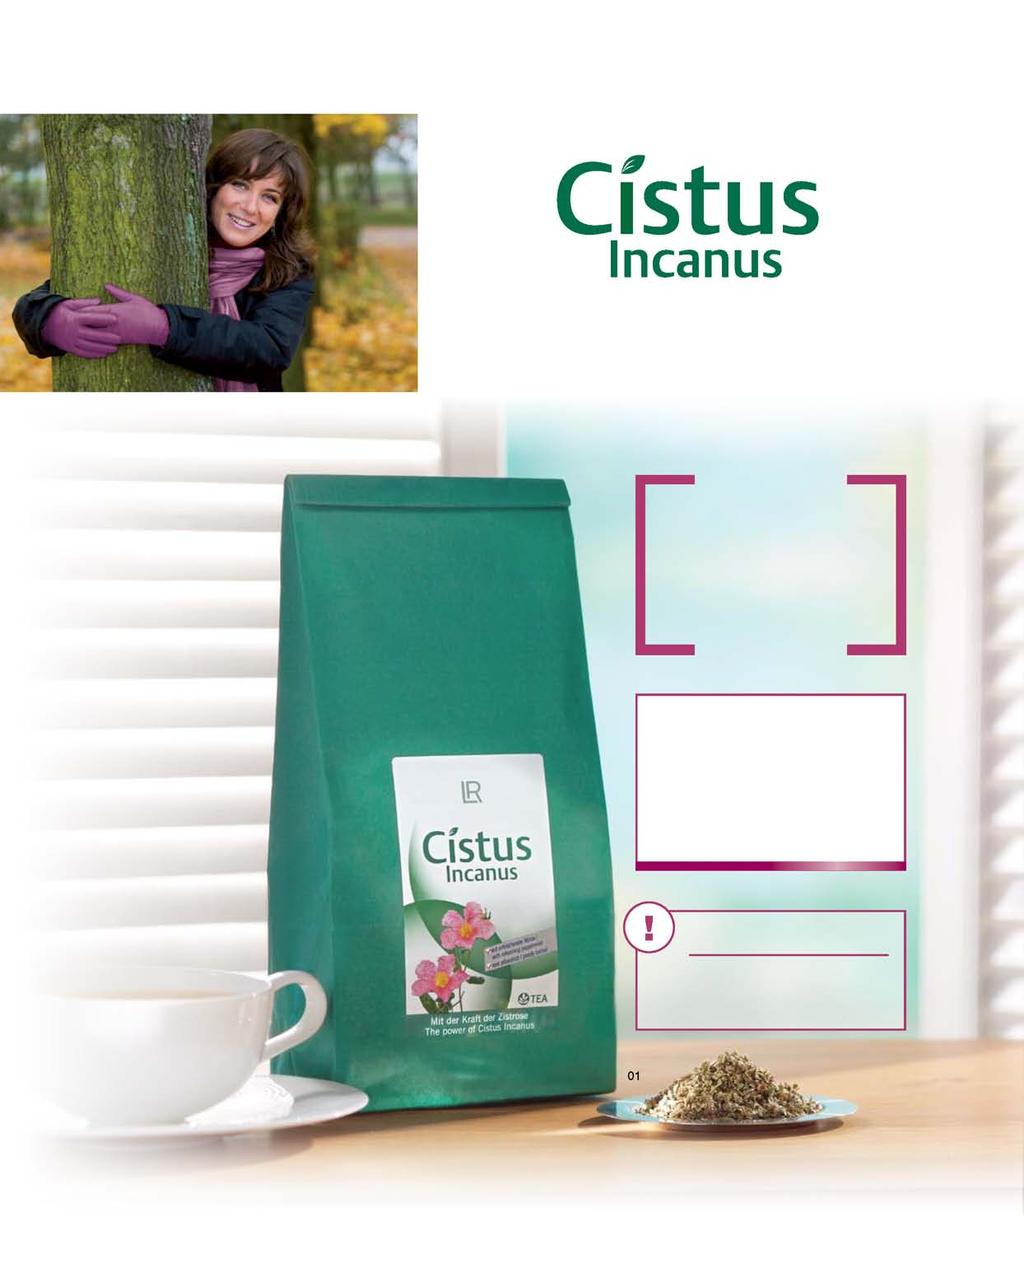 14 Onze kwaliteitsbelofte Voor onze Cistus Incanusproducten gebruiken wij uitsluitend de fijne snede van de hoogwaardige, rijke bladeren. Hout, stengels of snijafval worden zorgzaam gesorteerd.